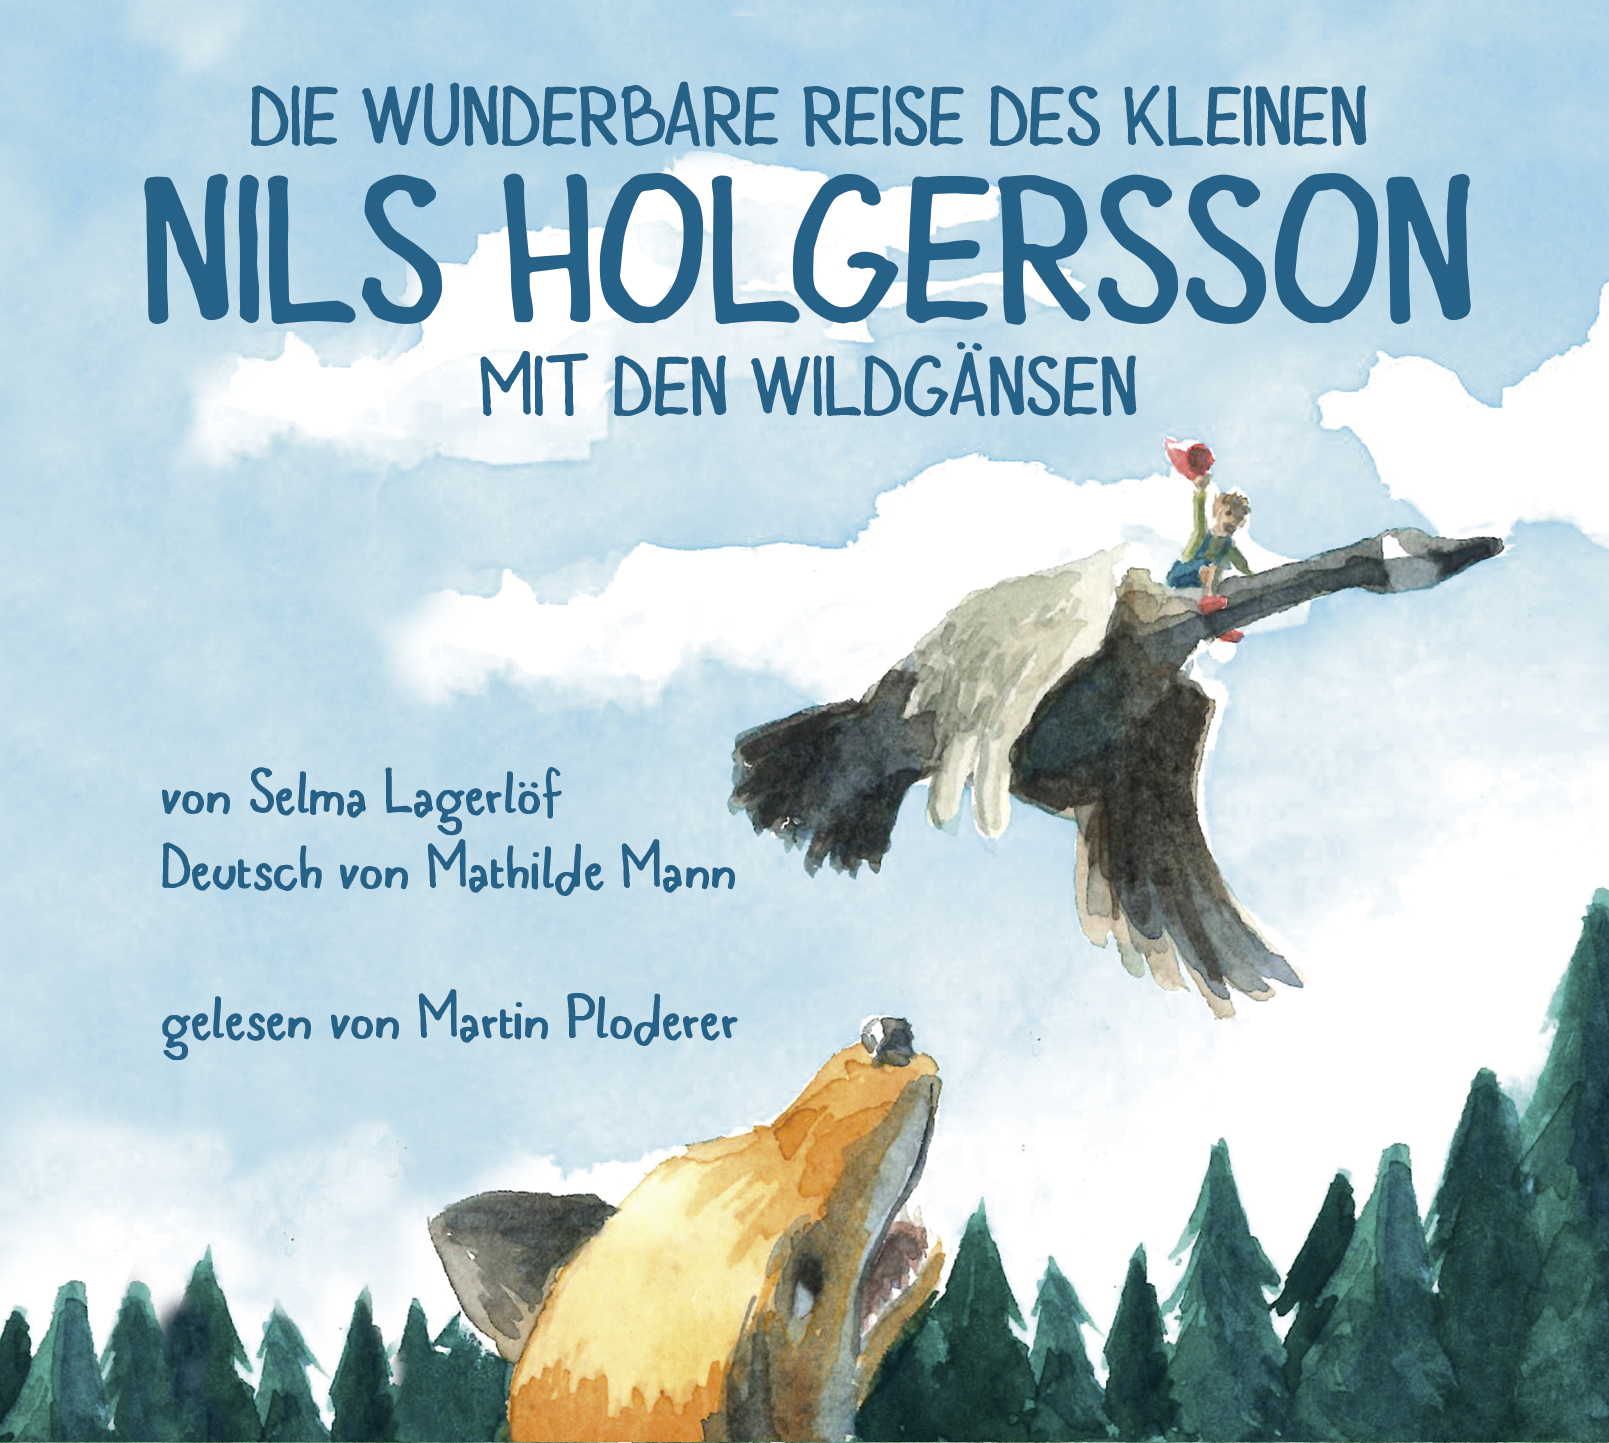 "Nils Holgersson" de Selma Lagerlöf - version intégrale sur deux CDs MP3